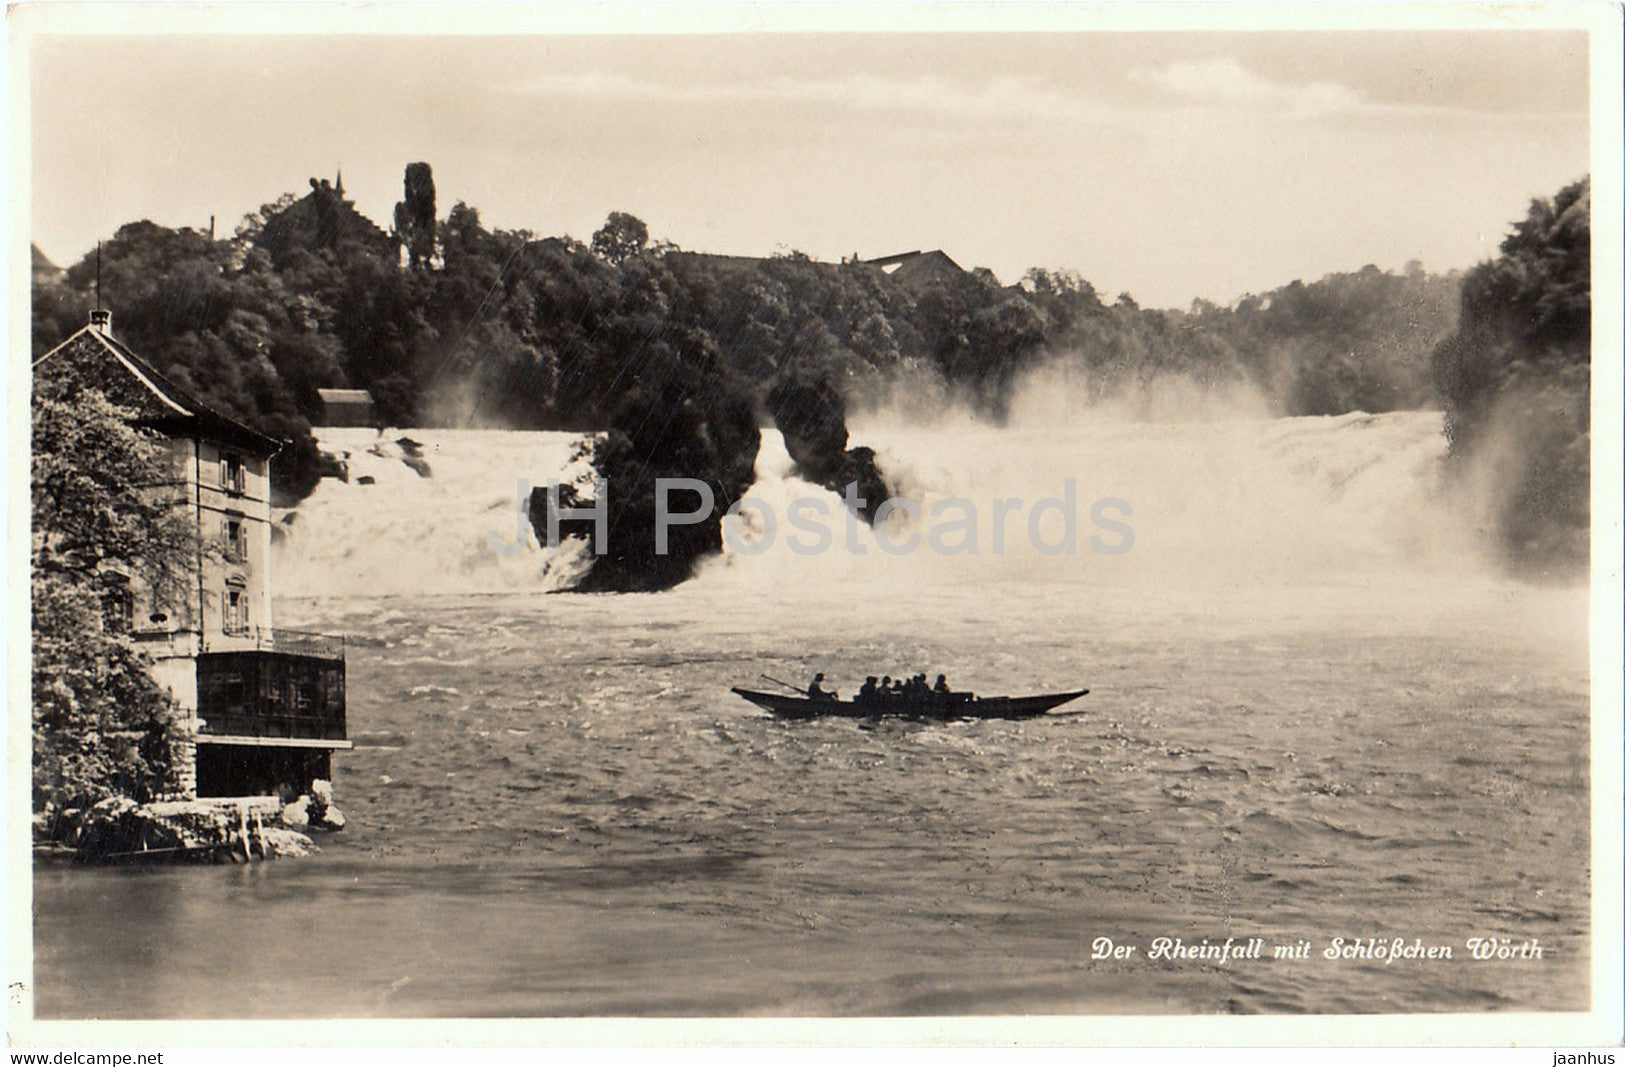 Der Rheinfall mit Schlosschen Worth - boat - old postcard - 1934 - Switzerland - used - JH Postcards